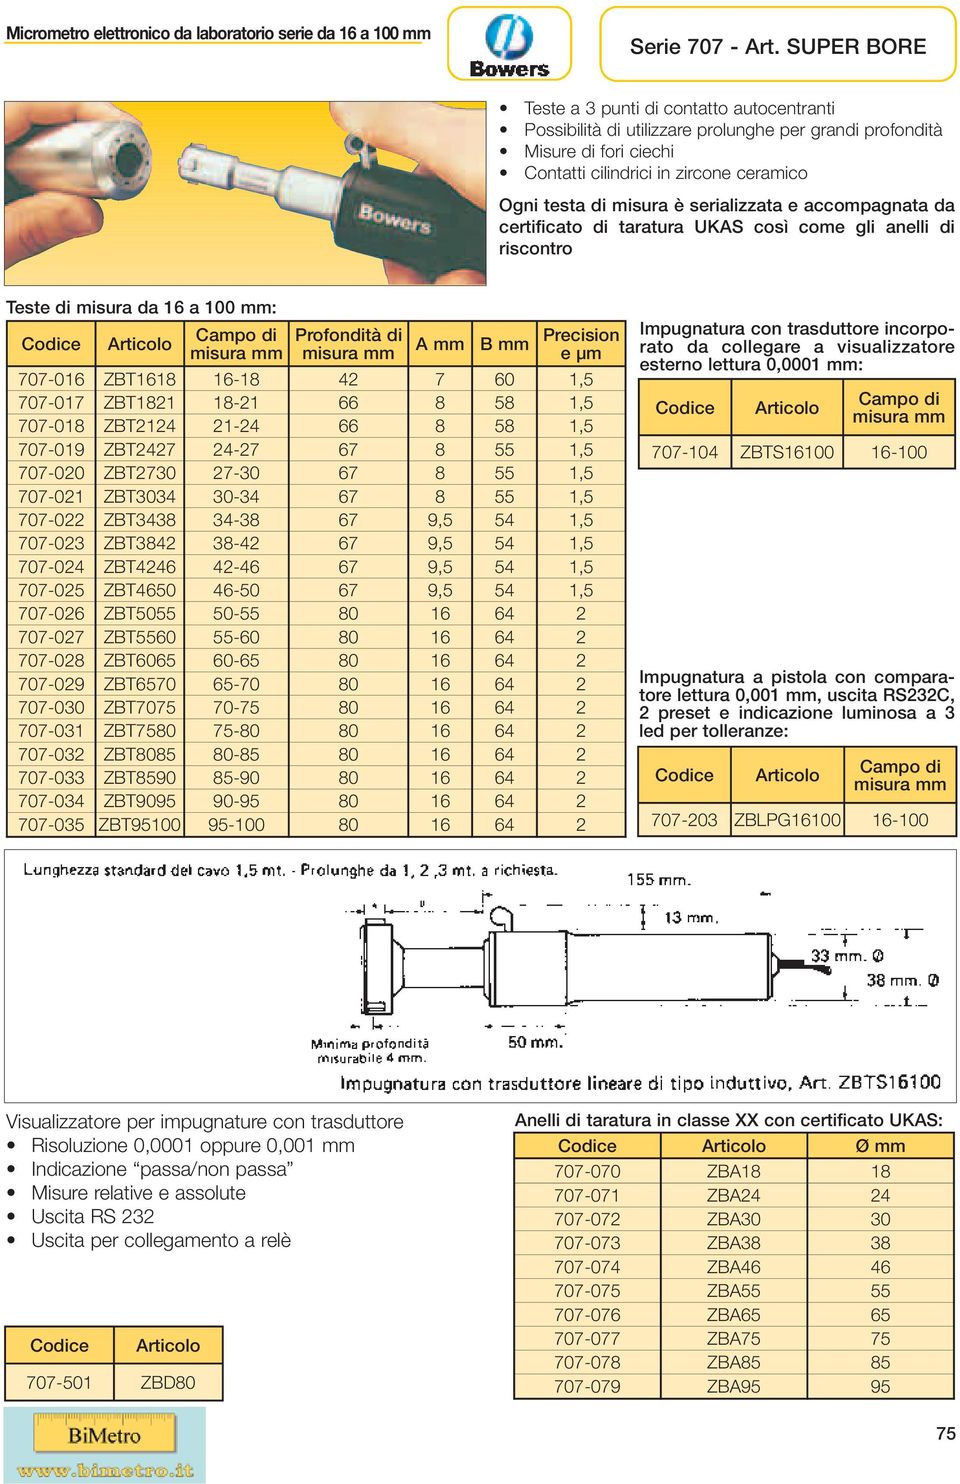 serializzata e accompagnata da certificato di taratura UKAS così come gli anelli di riscontro Teste di misura da 16 a 100 : A B Precision e μm 707-016 ZBT1618 16-18 42 7 60 1,5 707-017 ZBT1821 18-21